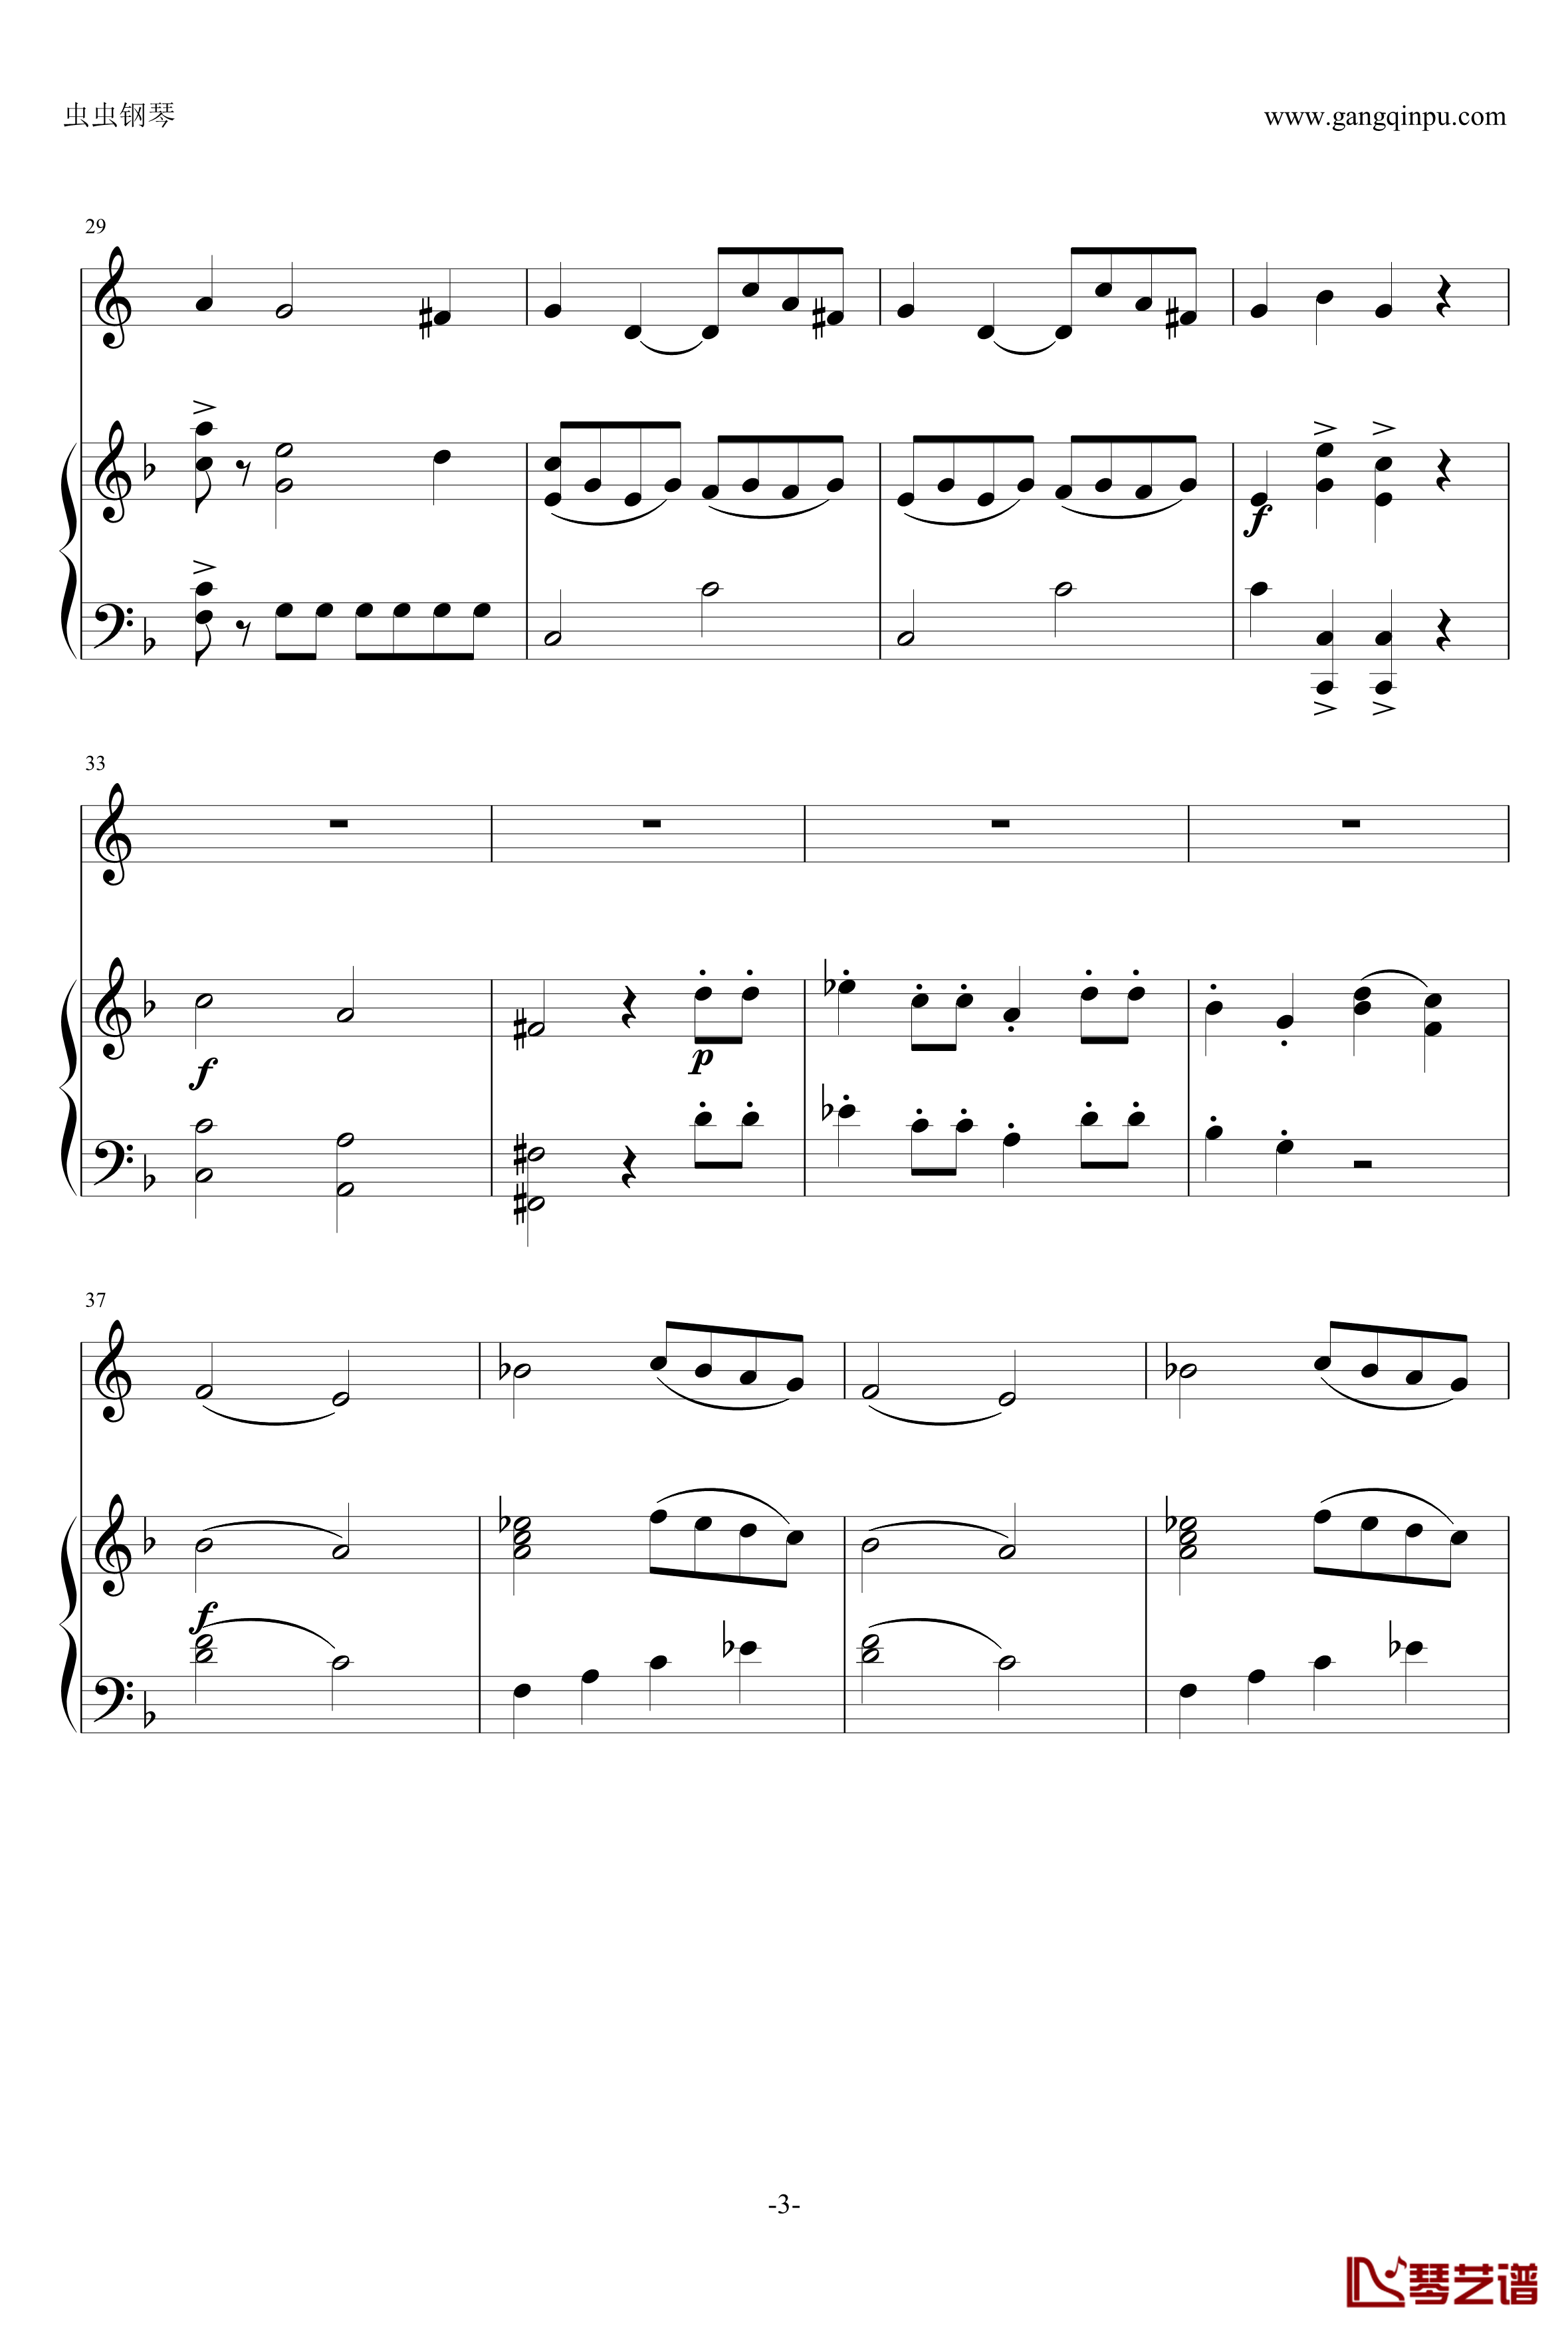 小奏鸣曲钢琴谱-莫扎特3